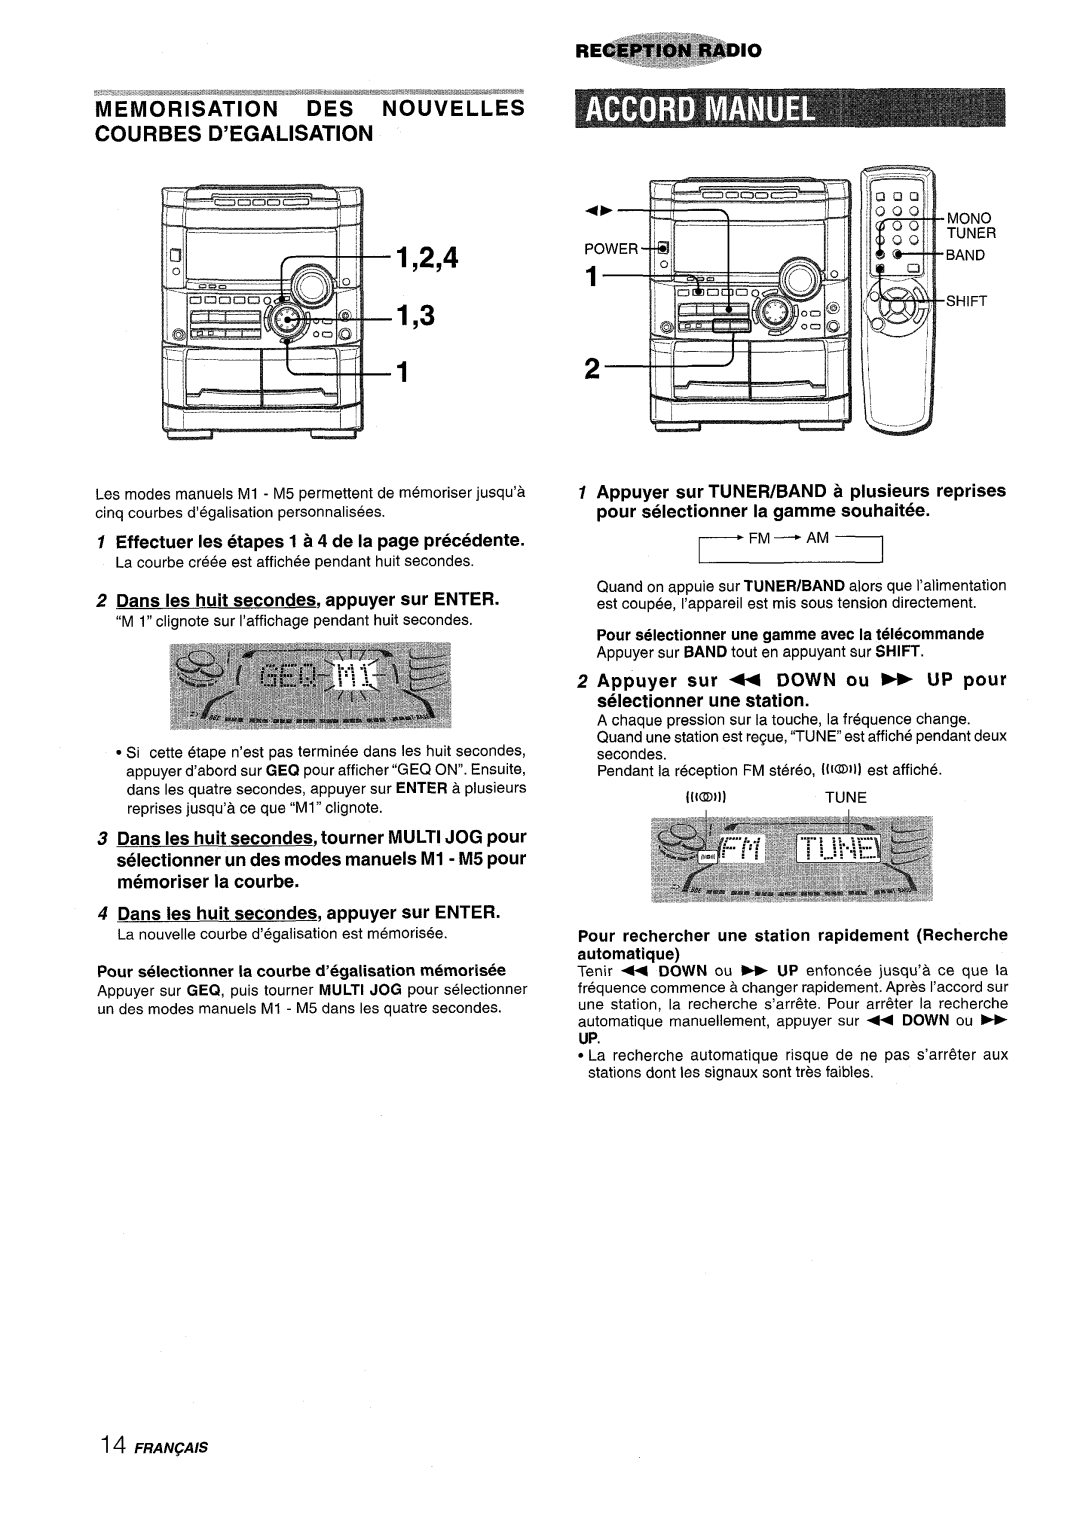 Sony NSX-A767 1,2,4, Memorisation Des Nouvelles Courbes D’Egalisation, Effectuer Ies etapes 1 a 4 de la page precedence 